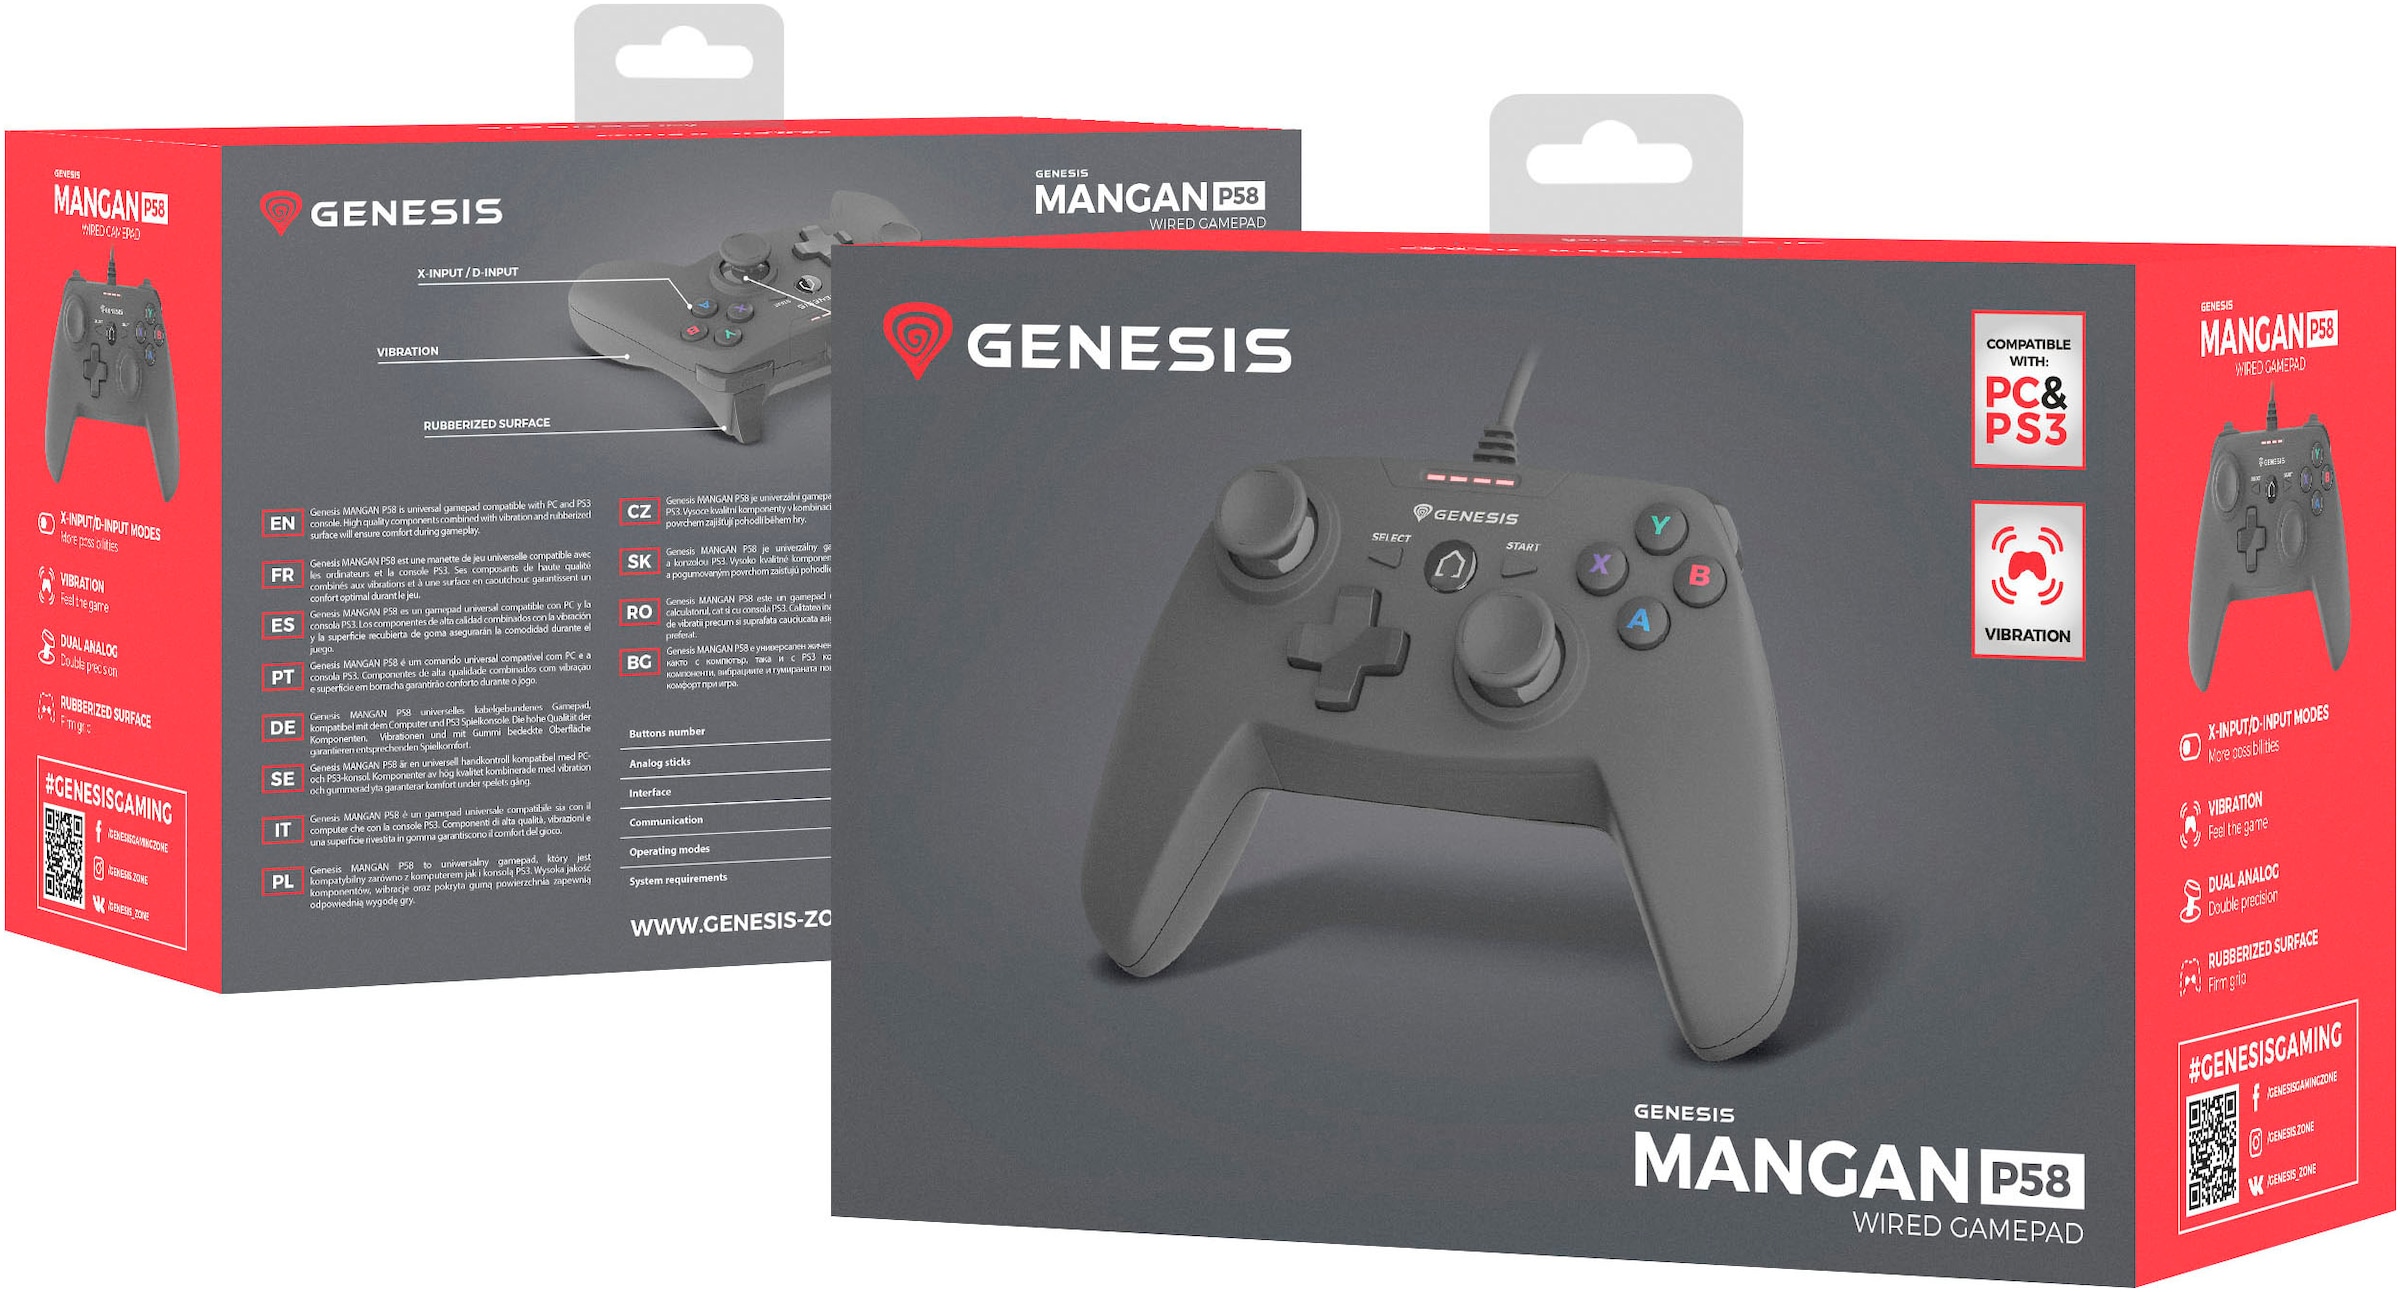 Genesis Gamepad »MANGAN P58 kabelgeb. schwarz«